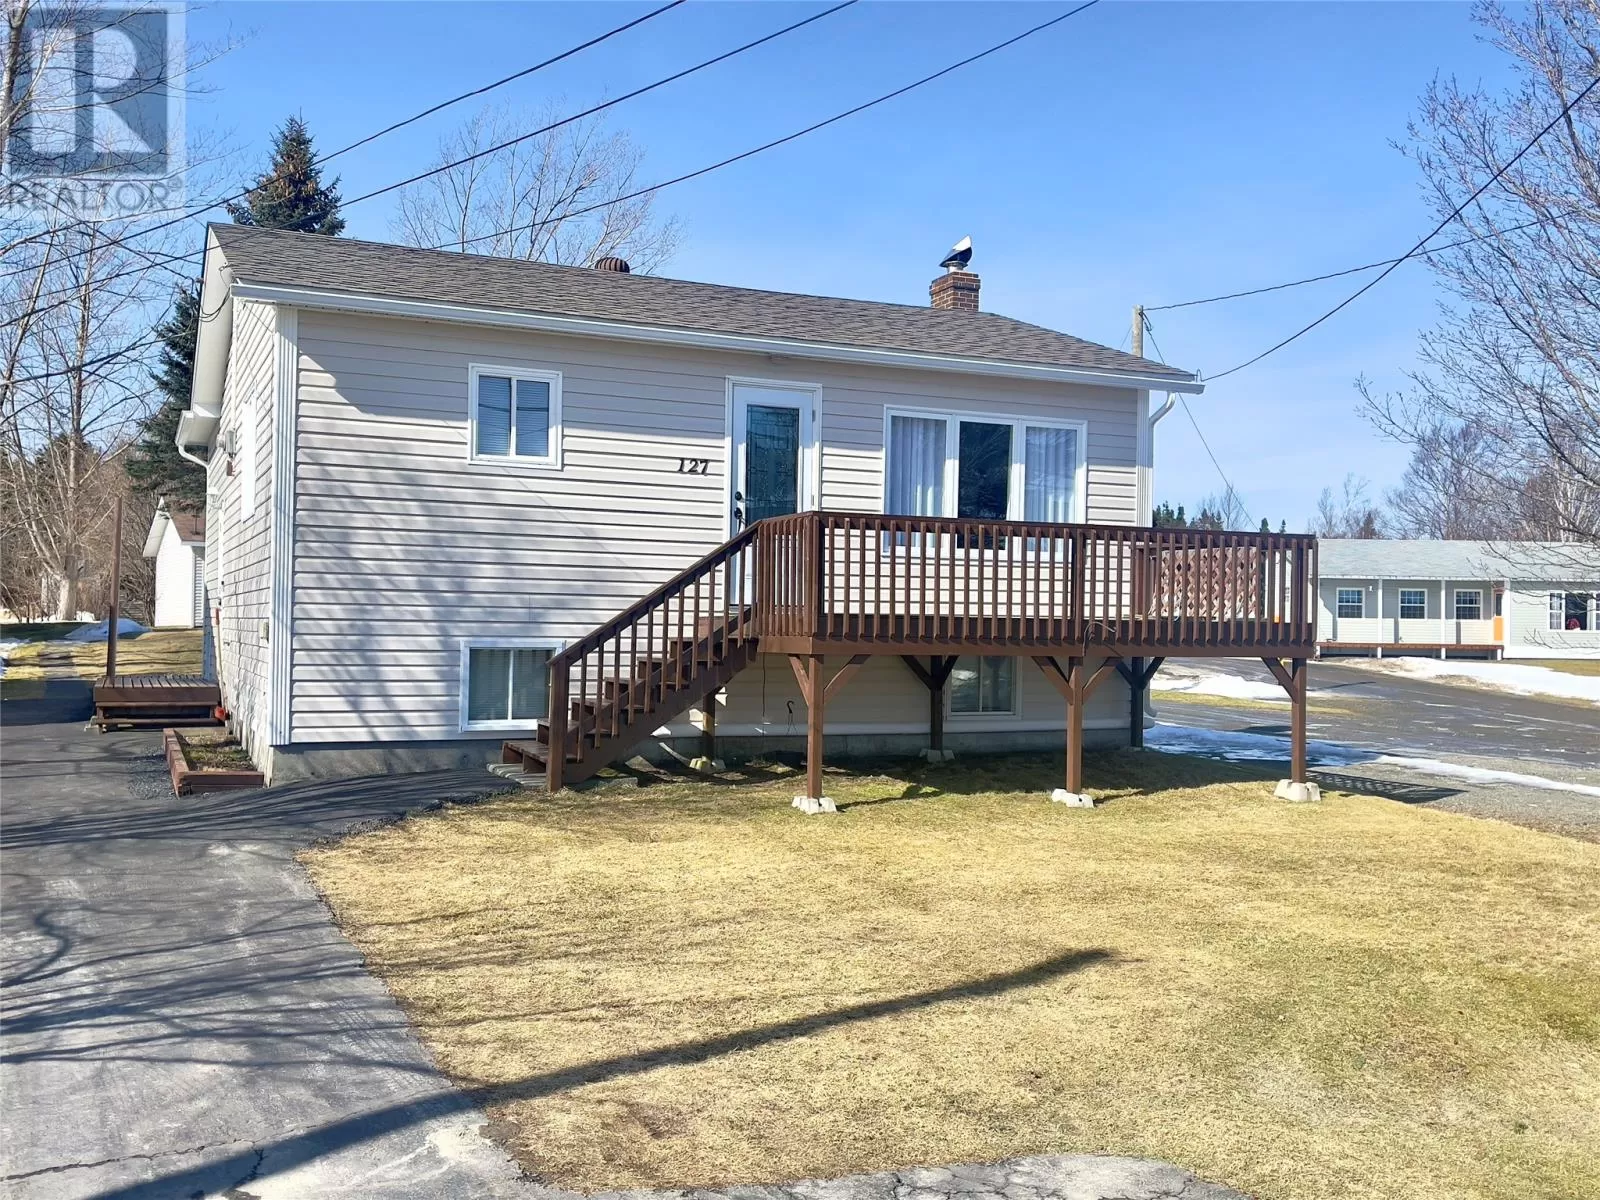 House for rent: 127 Main Street, Clarke's Head, Newfoundland & Labrador A0G 2G0